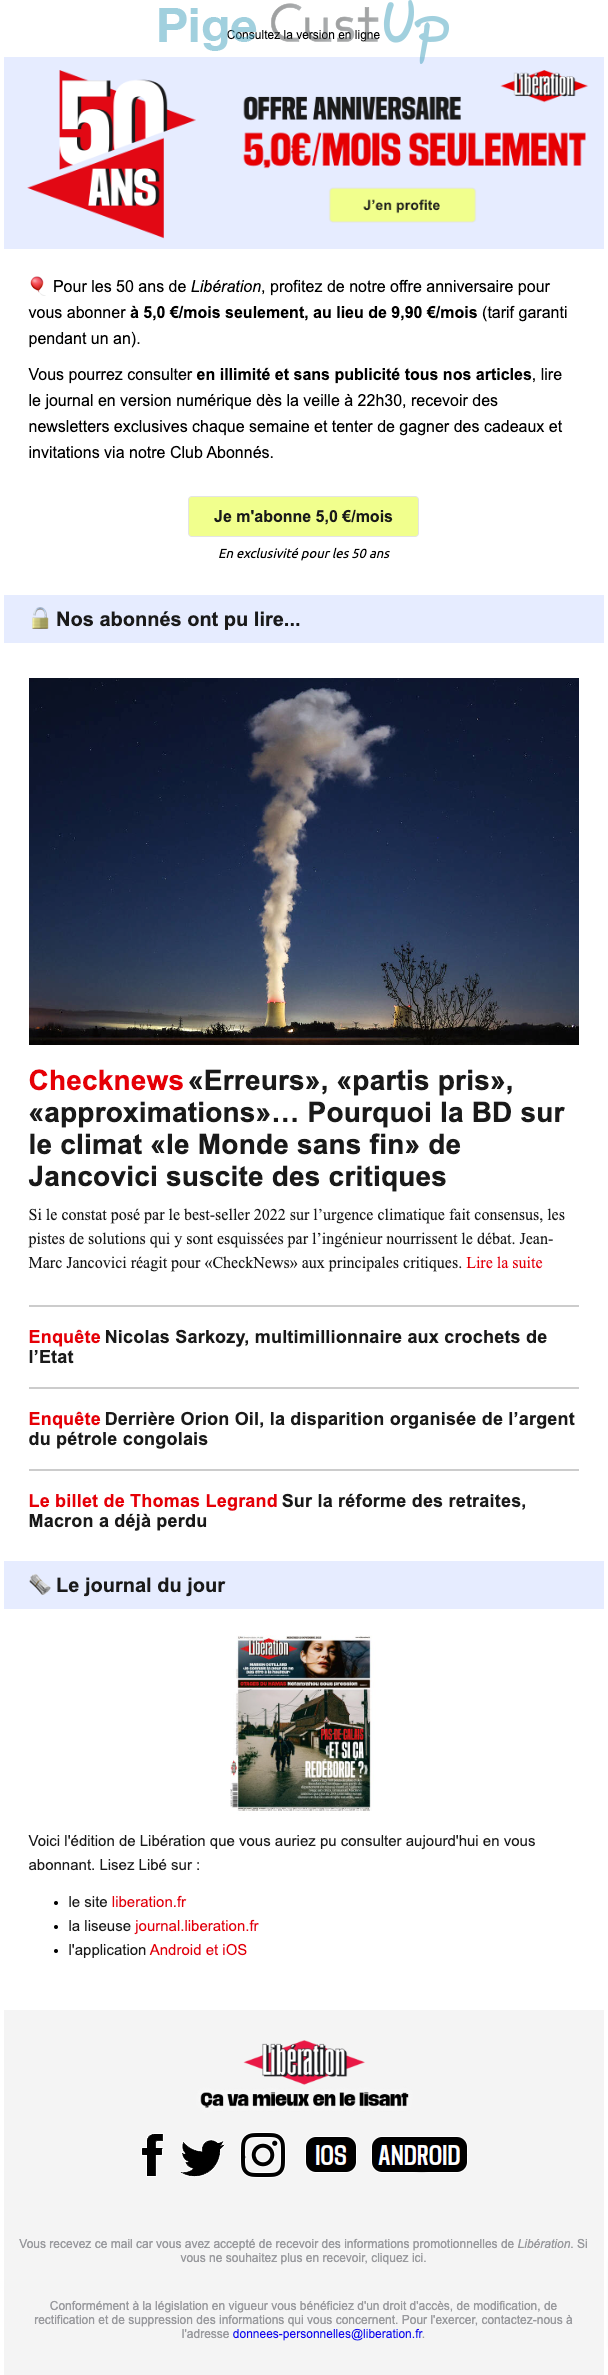 Exemple de Type de media  e-mailing - Libération - Marketing marque - Anniversaire marque